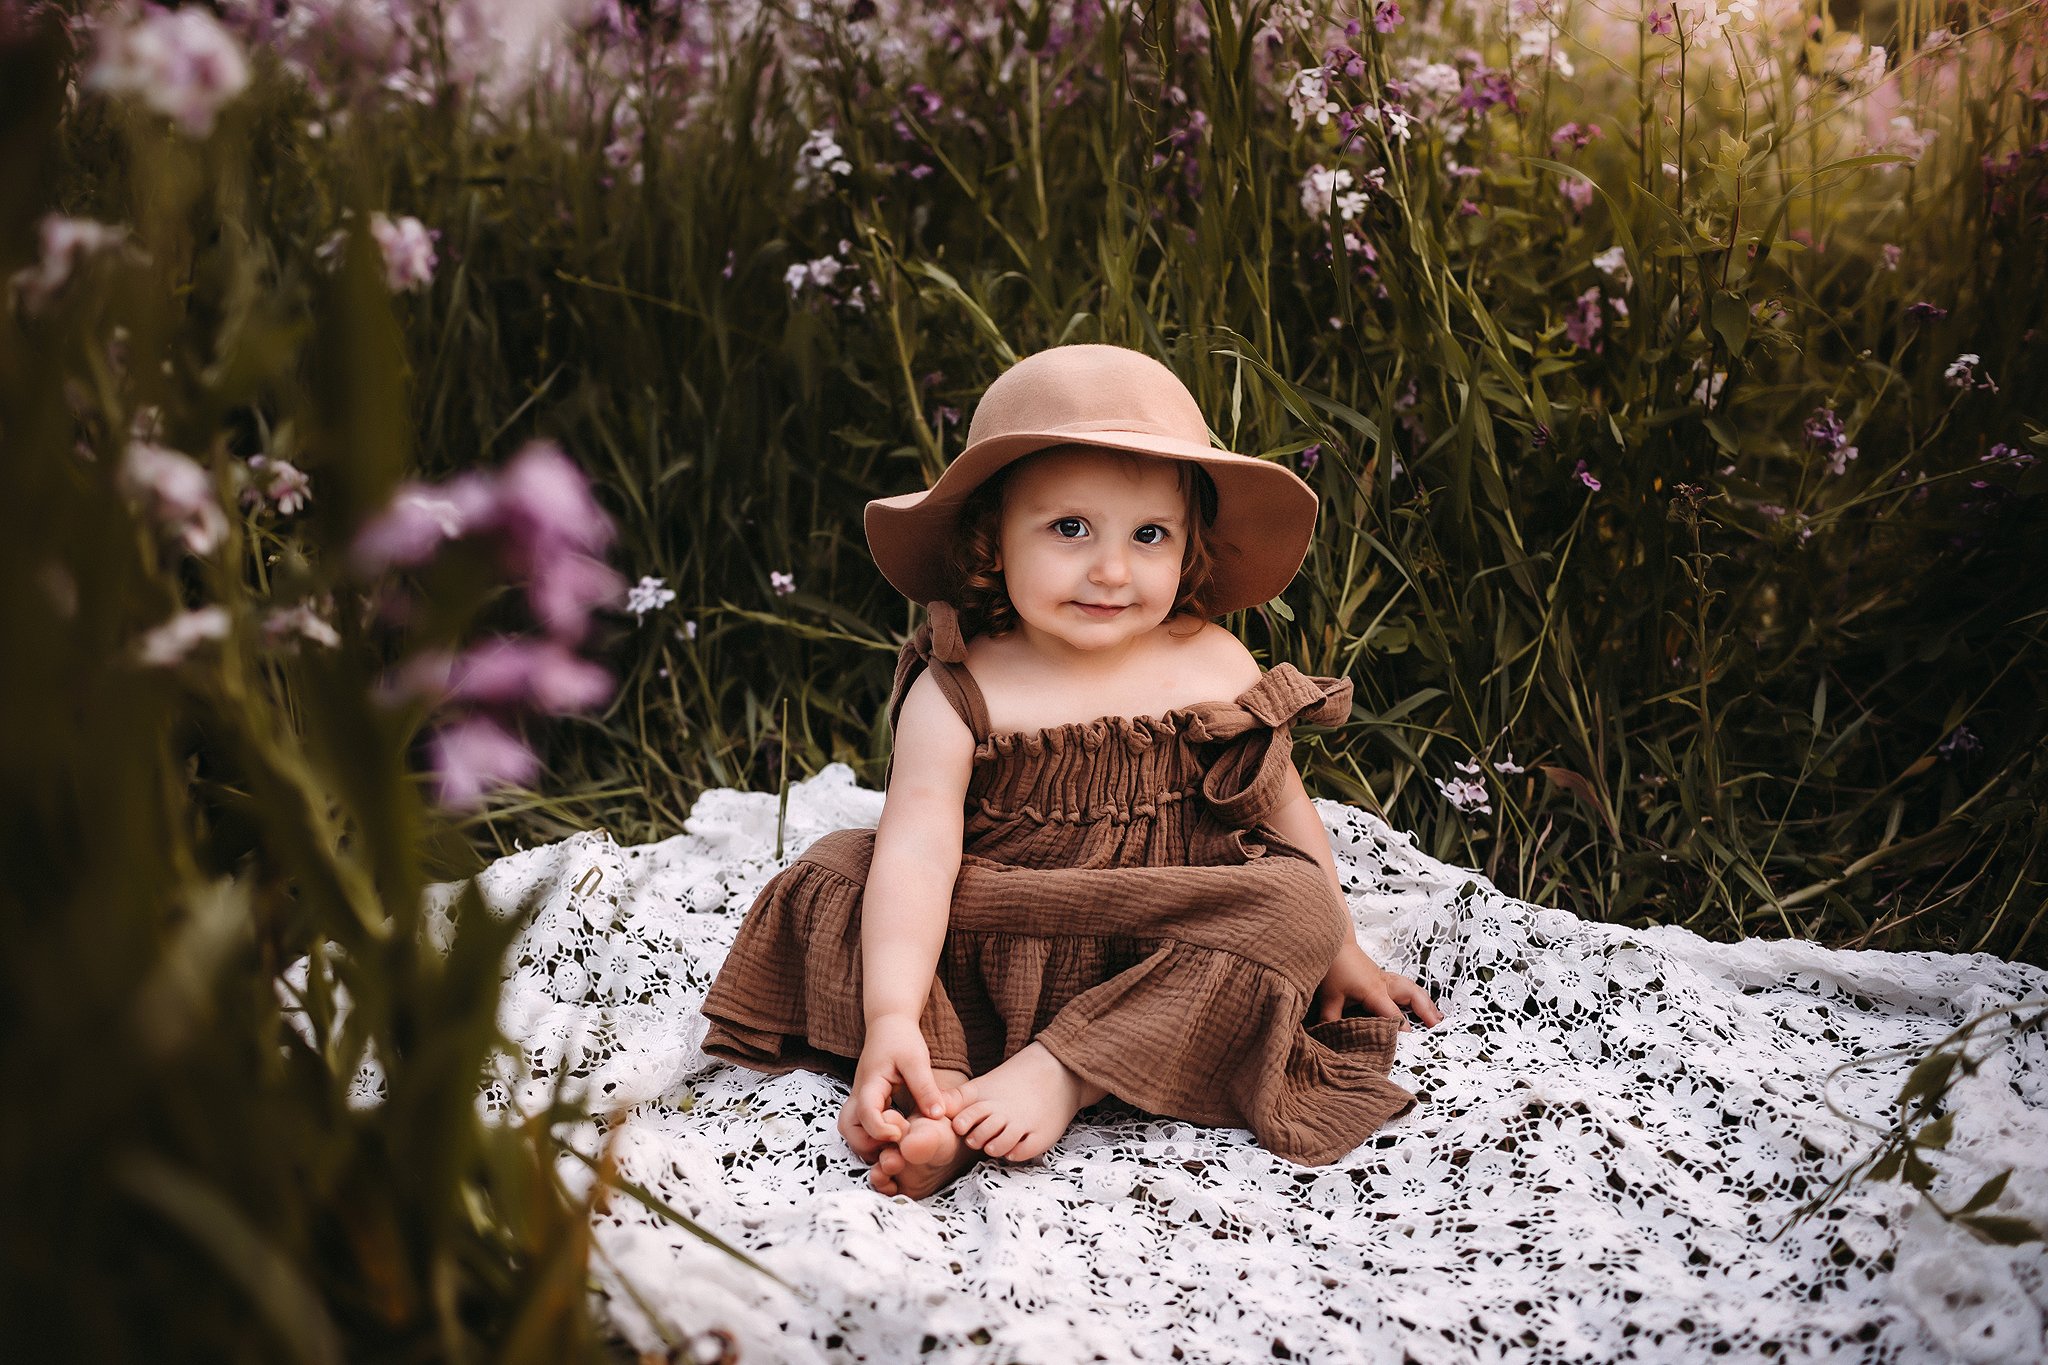 Adorable little girl in hat in purple flowers